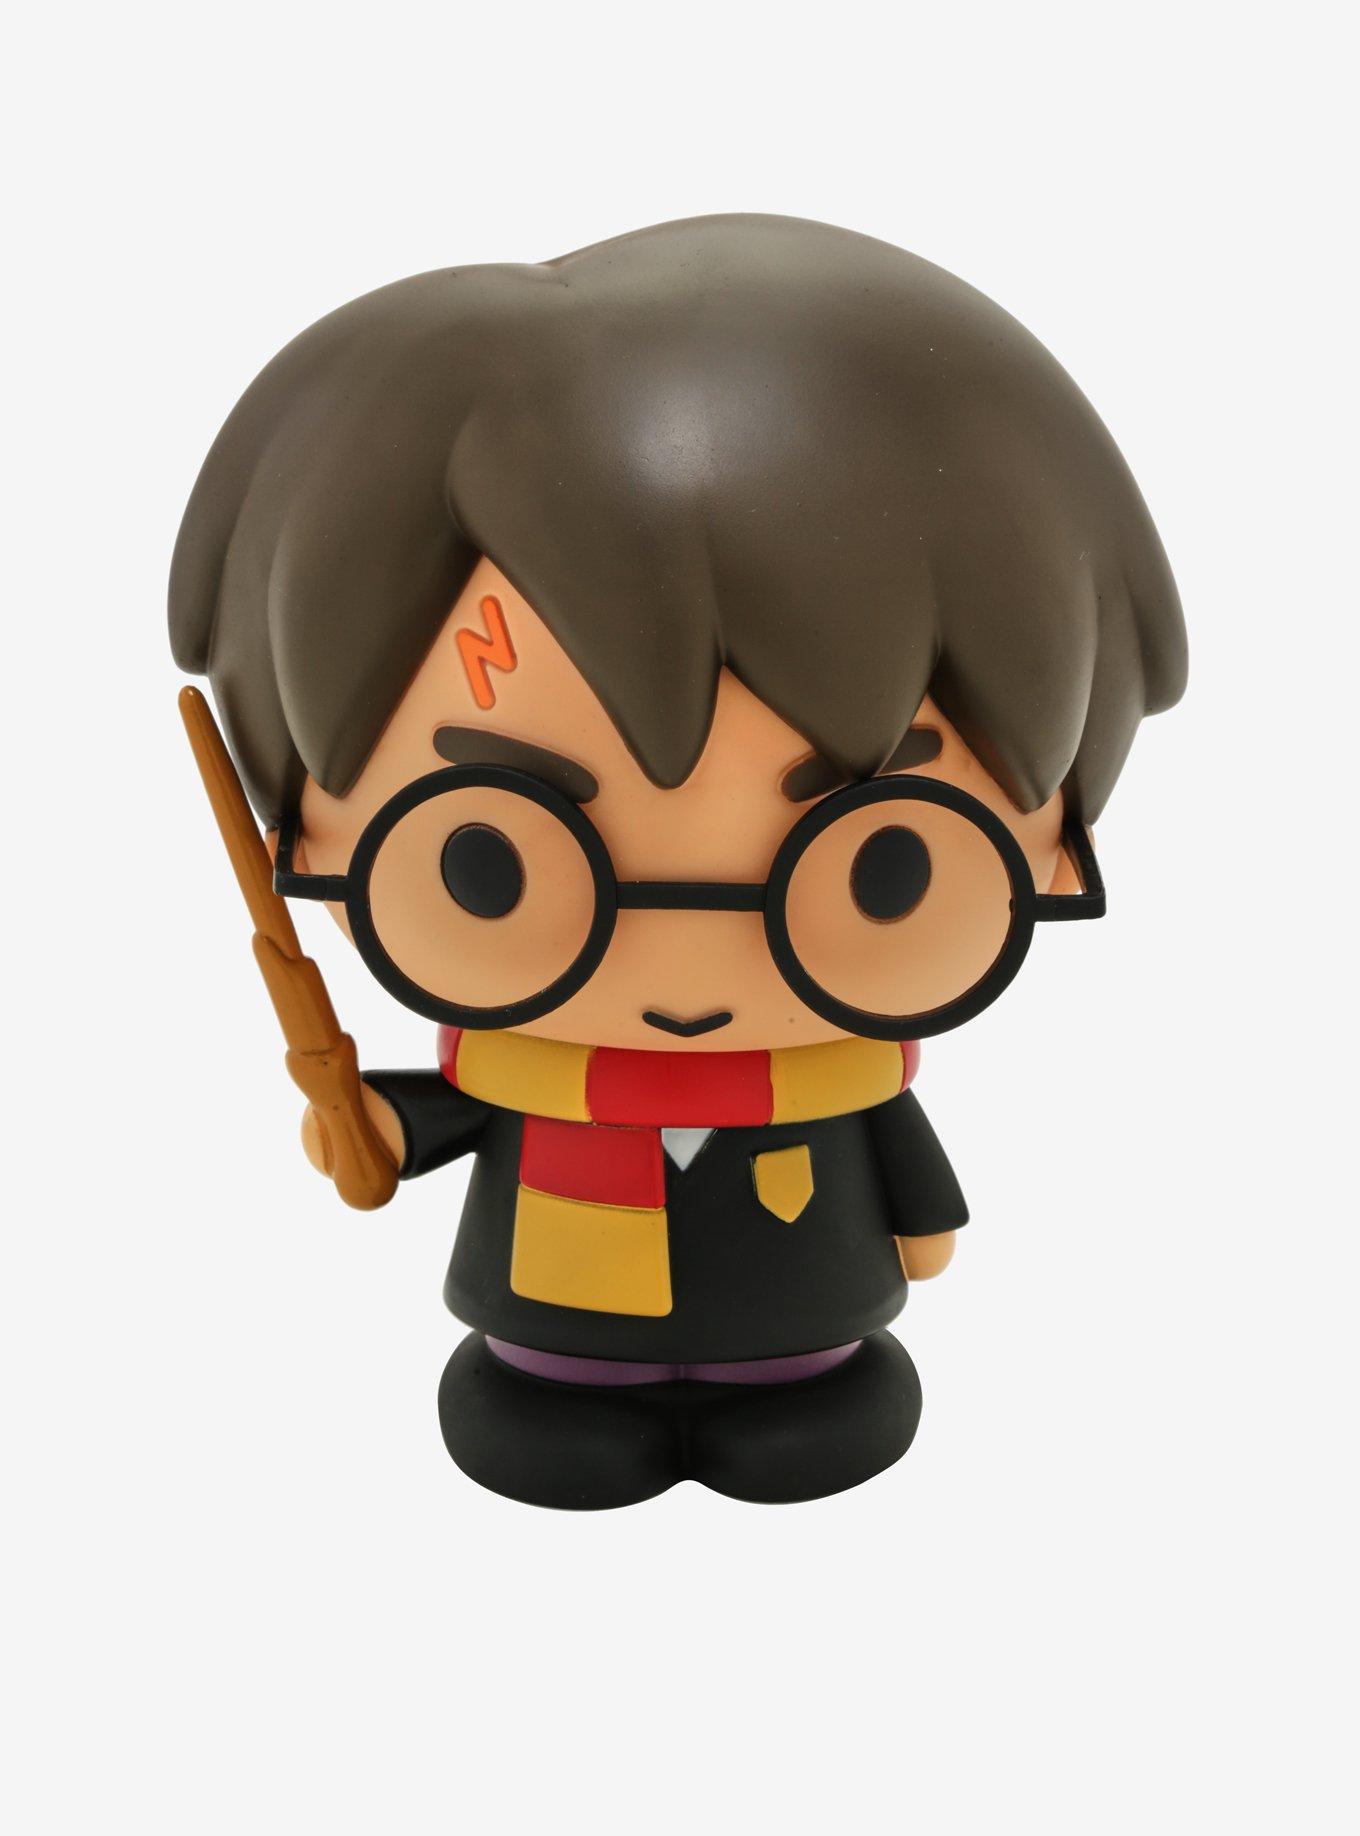 Harry Potter Chibi Harry Potter Plush, Hot Topic